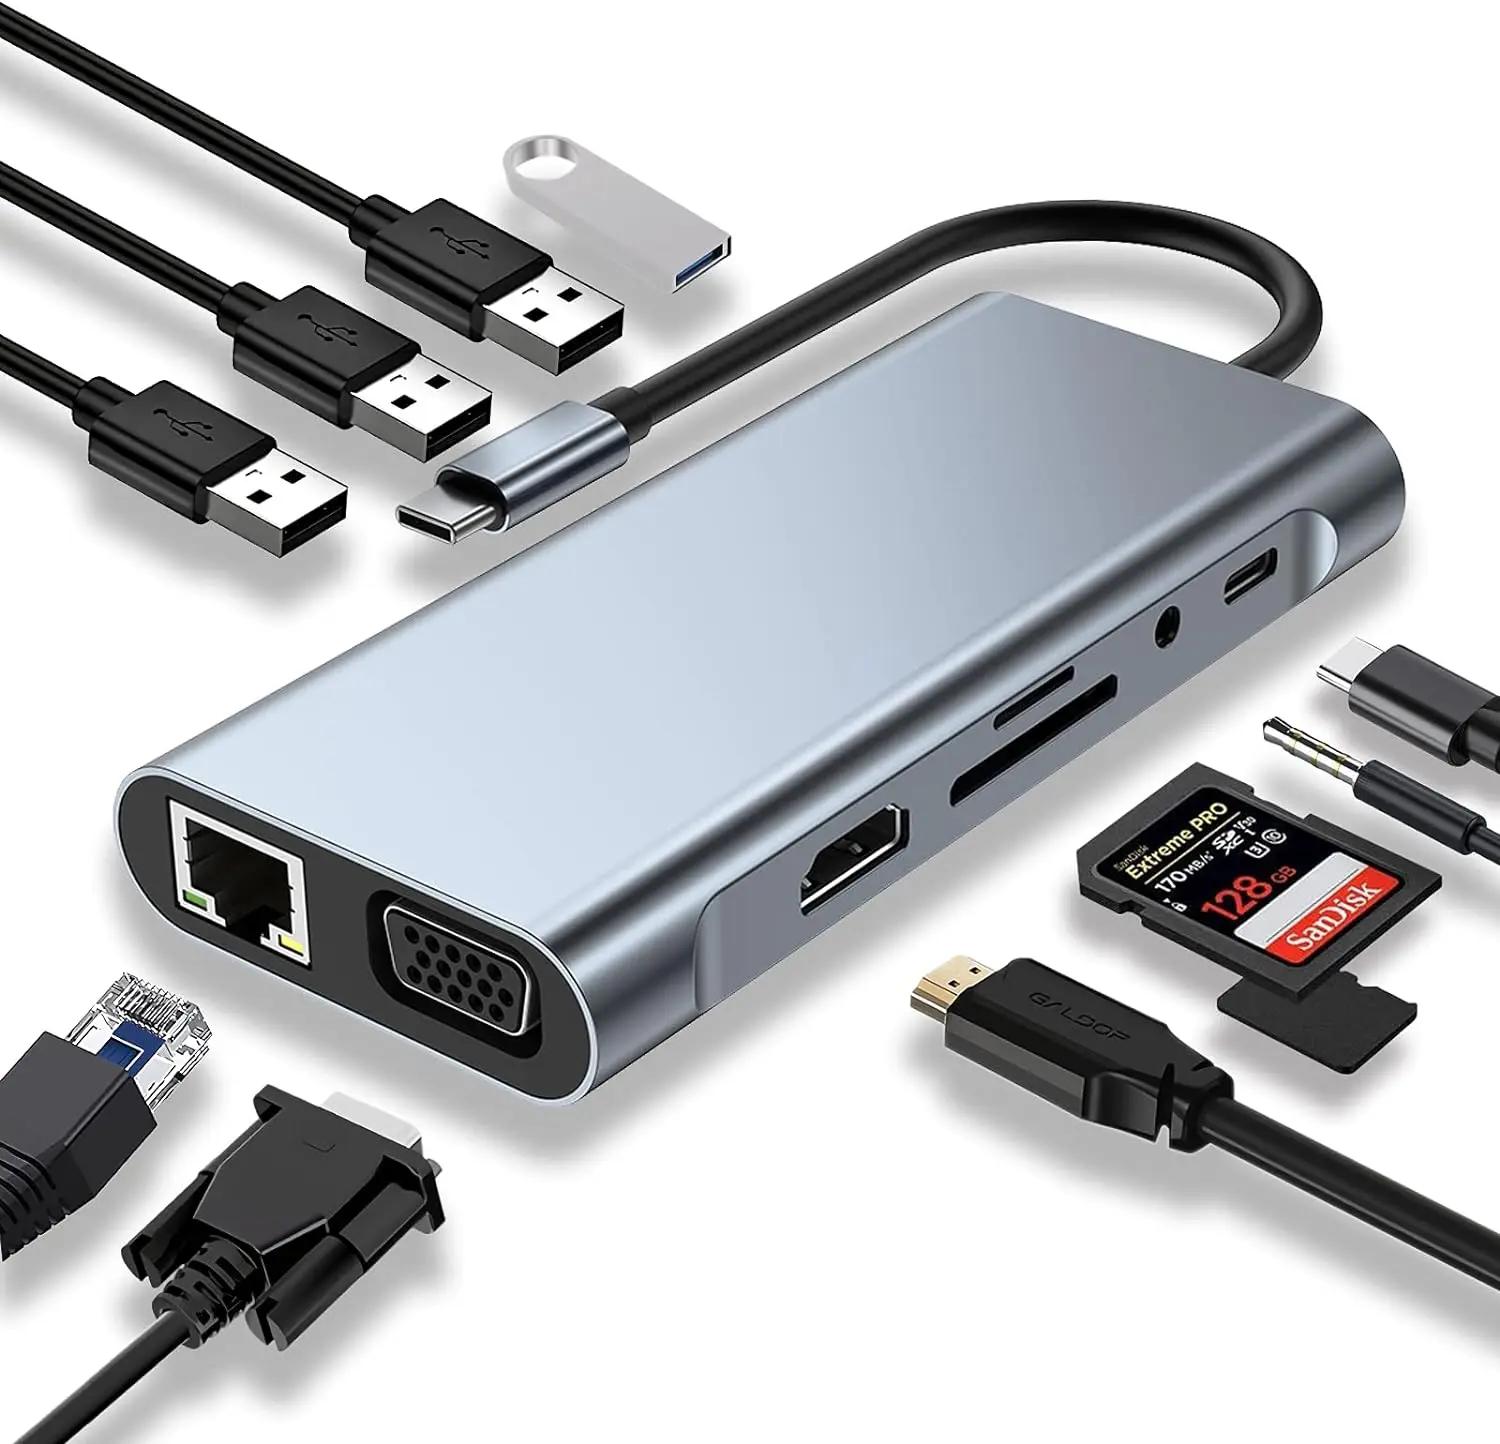 USB C , USB C , 4K HDTV, VGA, CŸ PD, USB3.0, RJ45 ̴, SD/TF ī , 3.5mm AUX, 11  1 